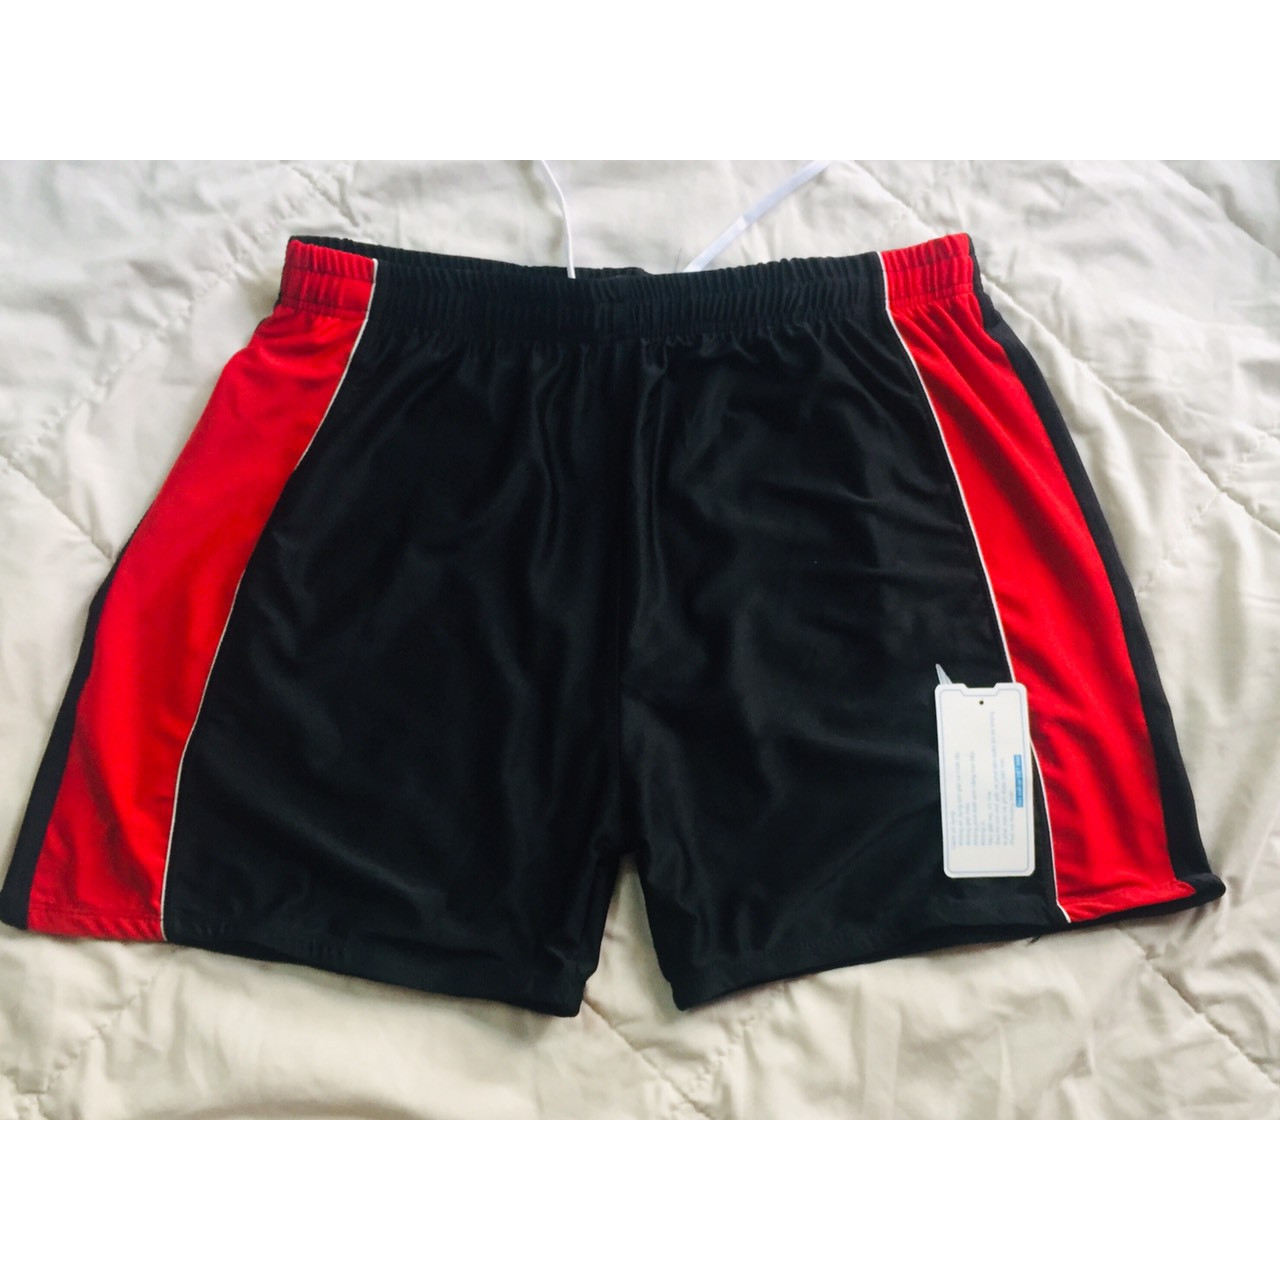 quần bơi nam dạng đùi  big size cho nam 85 đến 95 kg , phong cách trẻ trung thể thao , màu đen phối đỏ /xanh hàng việt nam